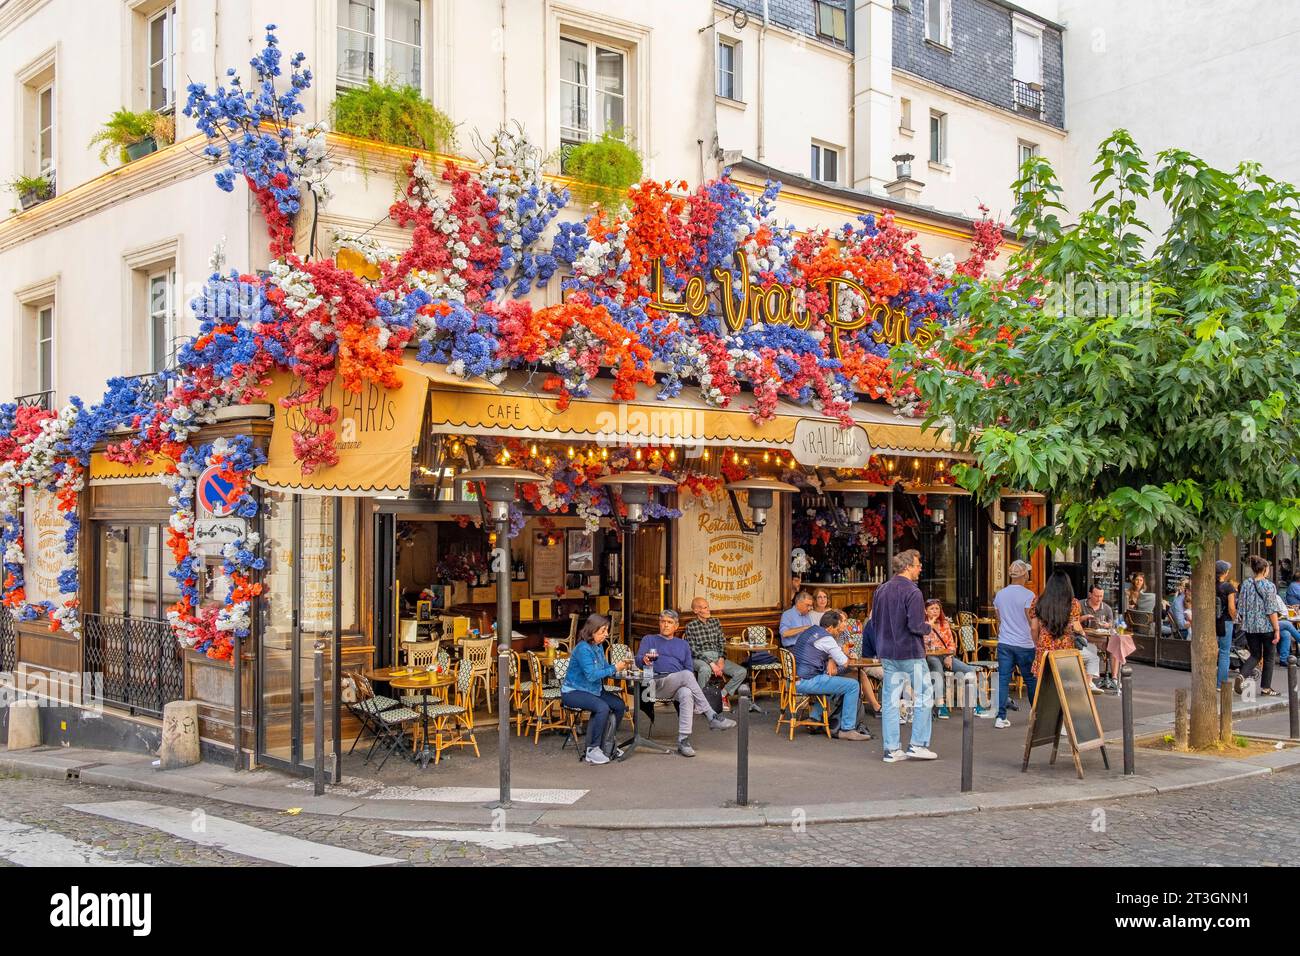 France, Paris, Montmartre district, rue des Abbesses, the Vrai Paris cafe Stock Photo